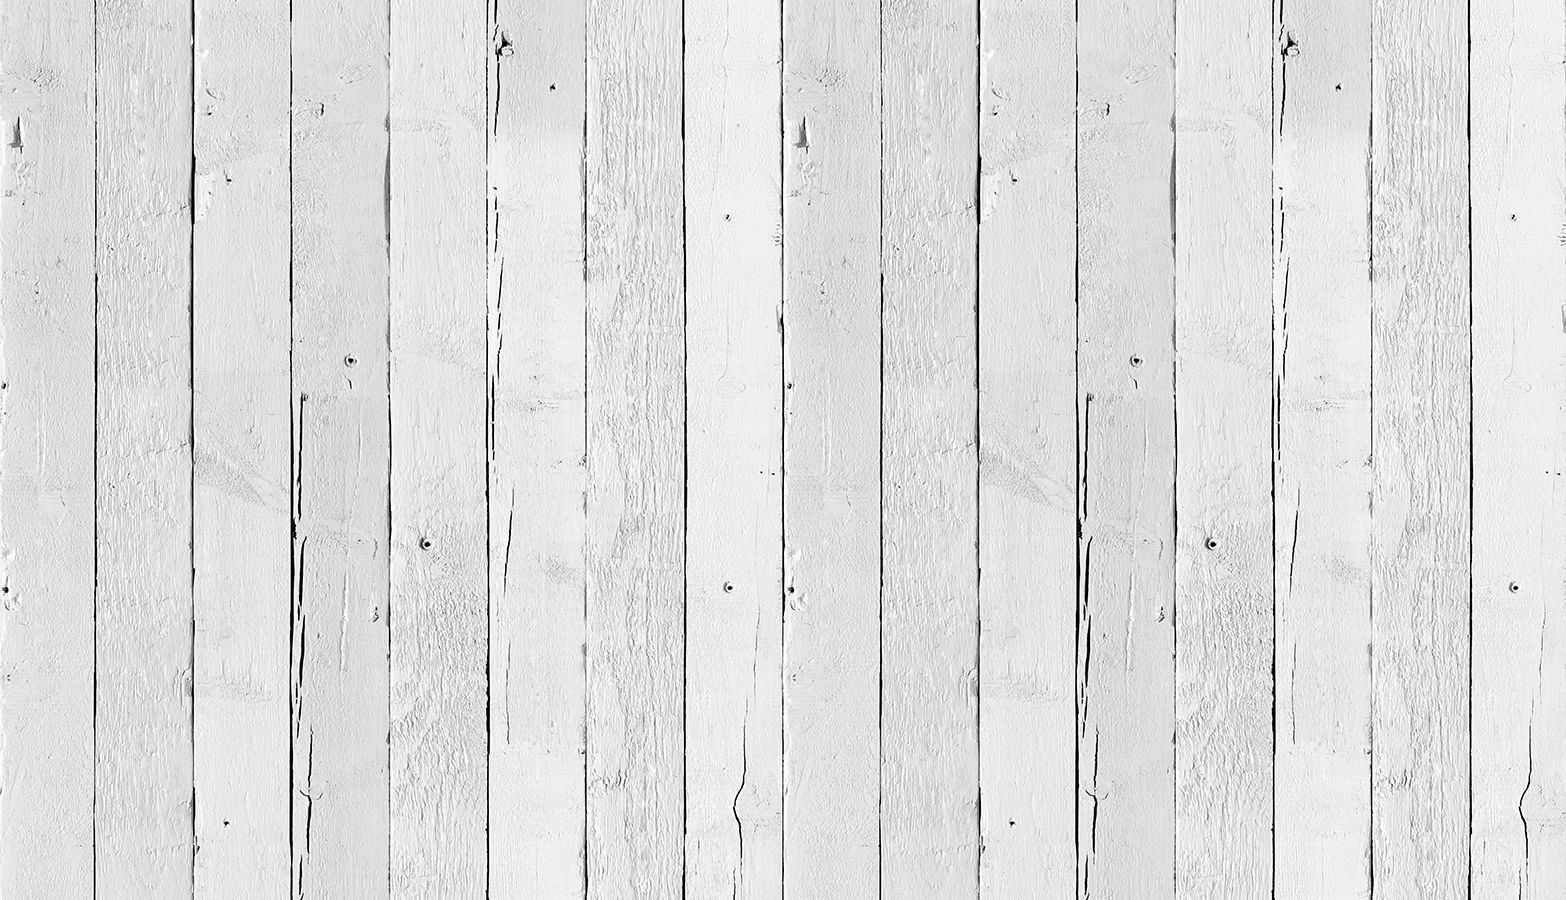 تکسچر بافت چوب سفید آماده دانلود برای کاربرد های گوناگون 